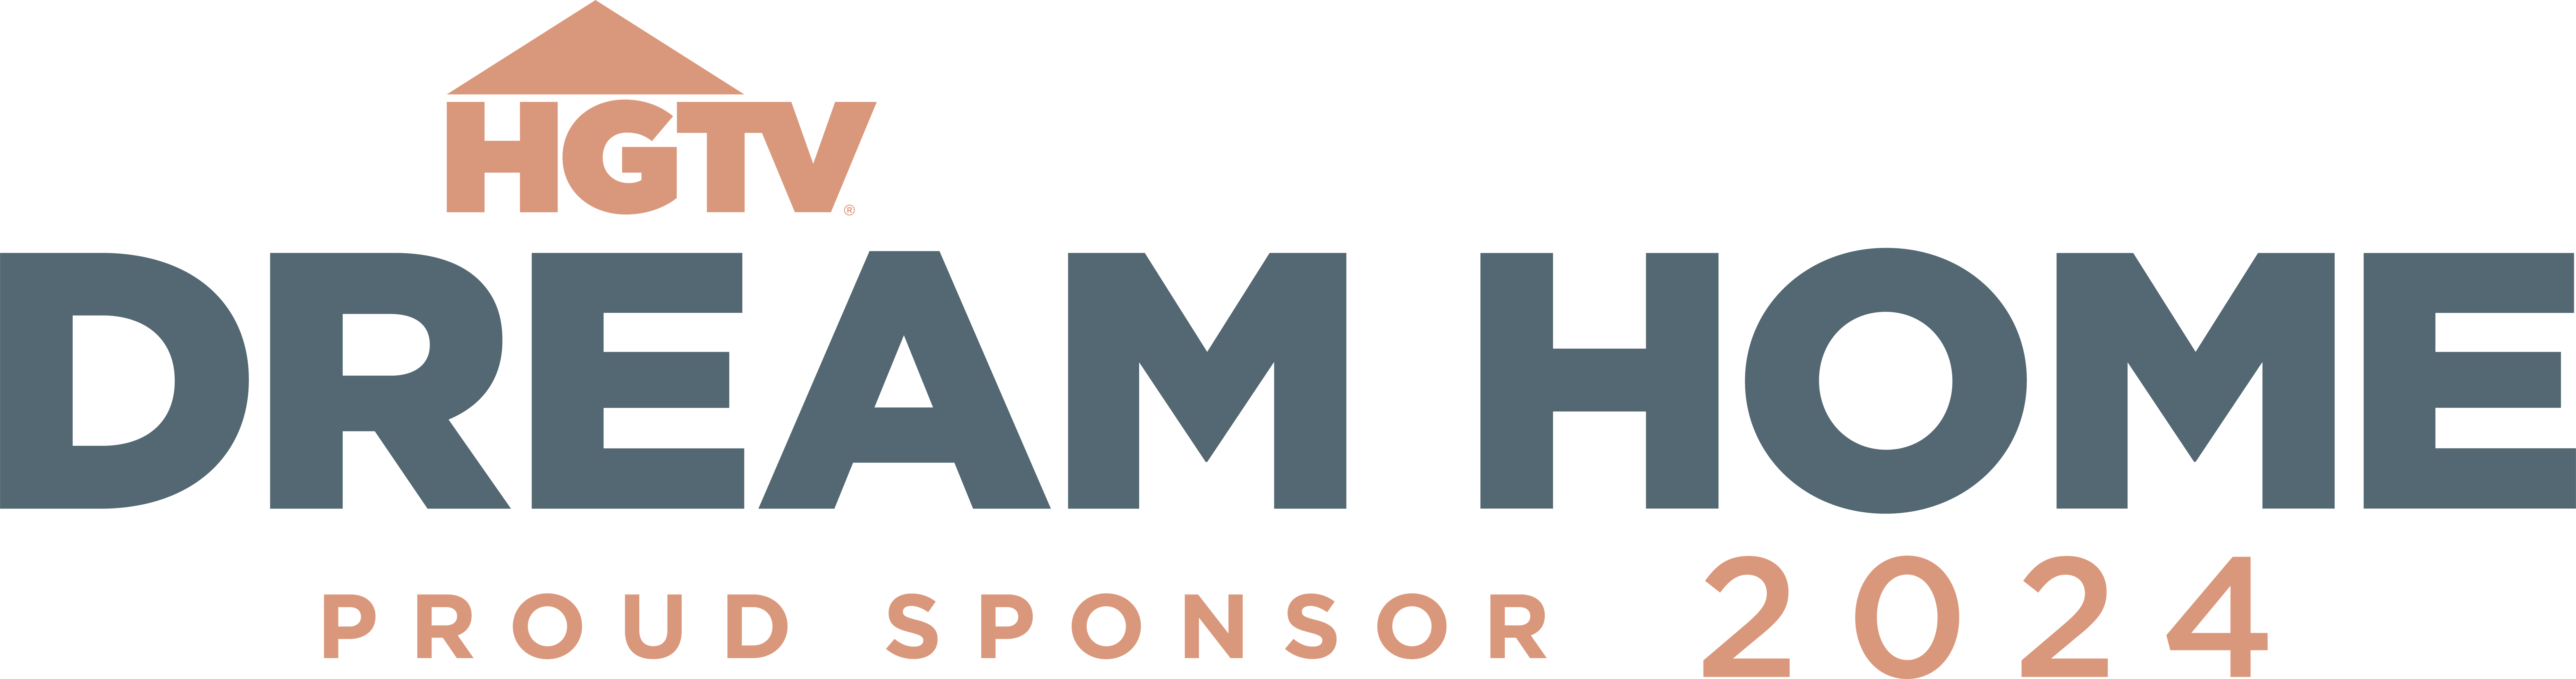 HGTV Dream Home Proud Sponsor